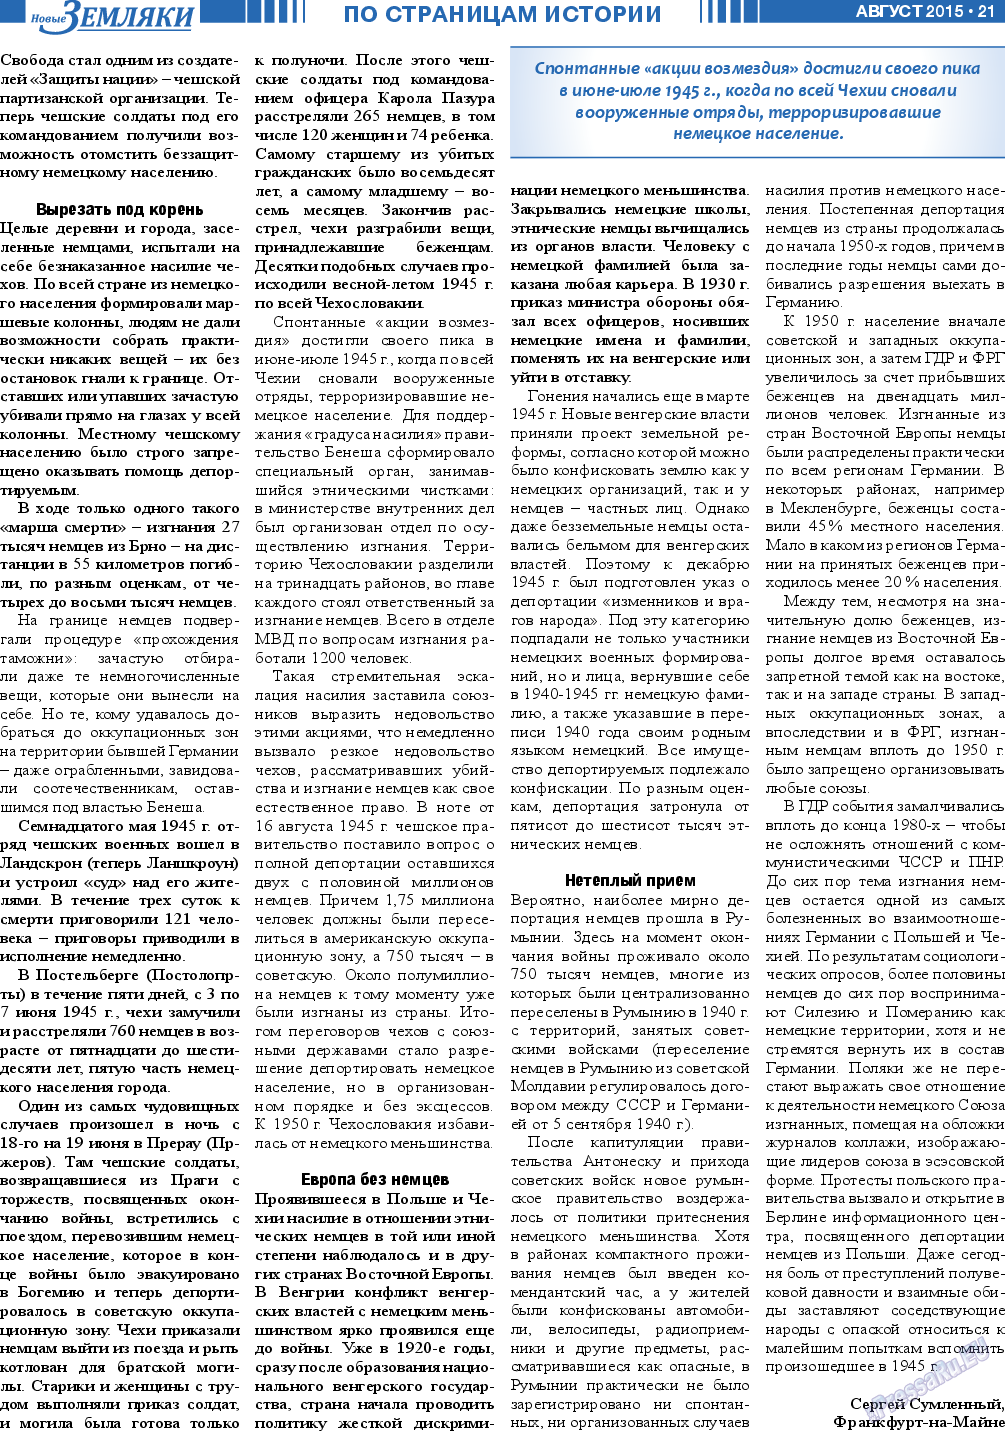 Новые Земляки, газета. 2015 №8 стр.21